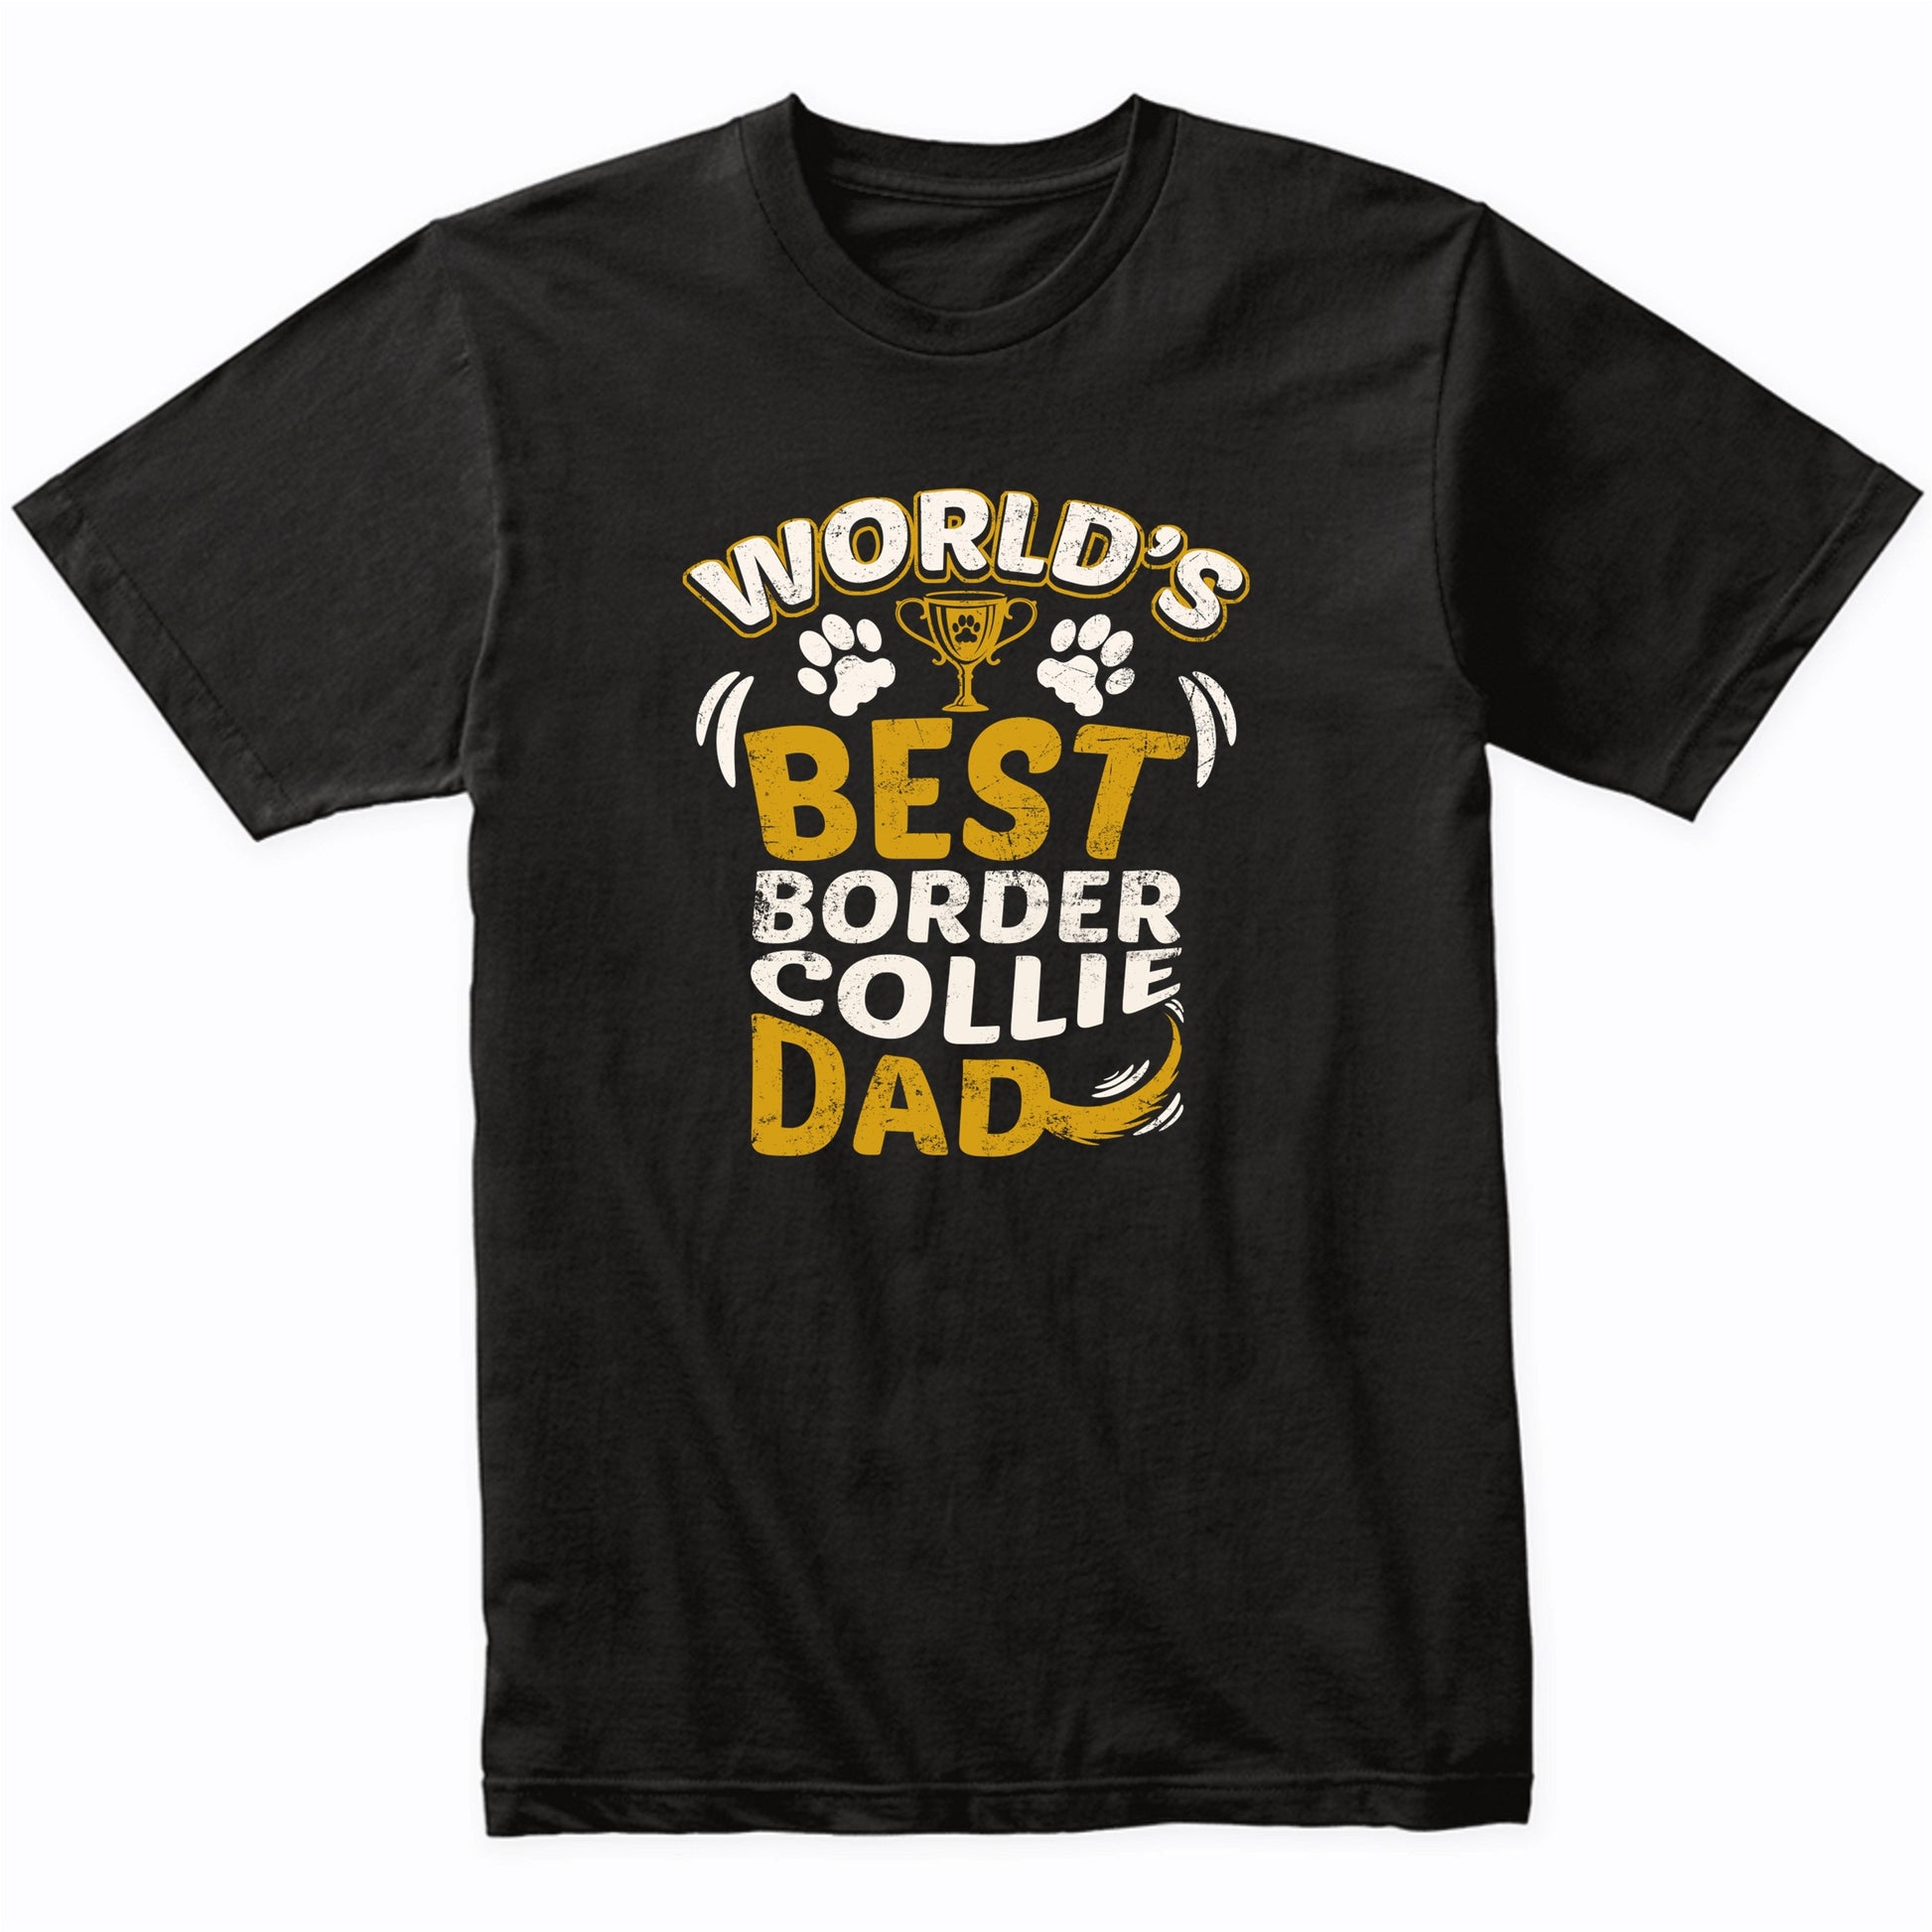 World's Best Border Collie Dad Graphic T-Shirt